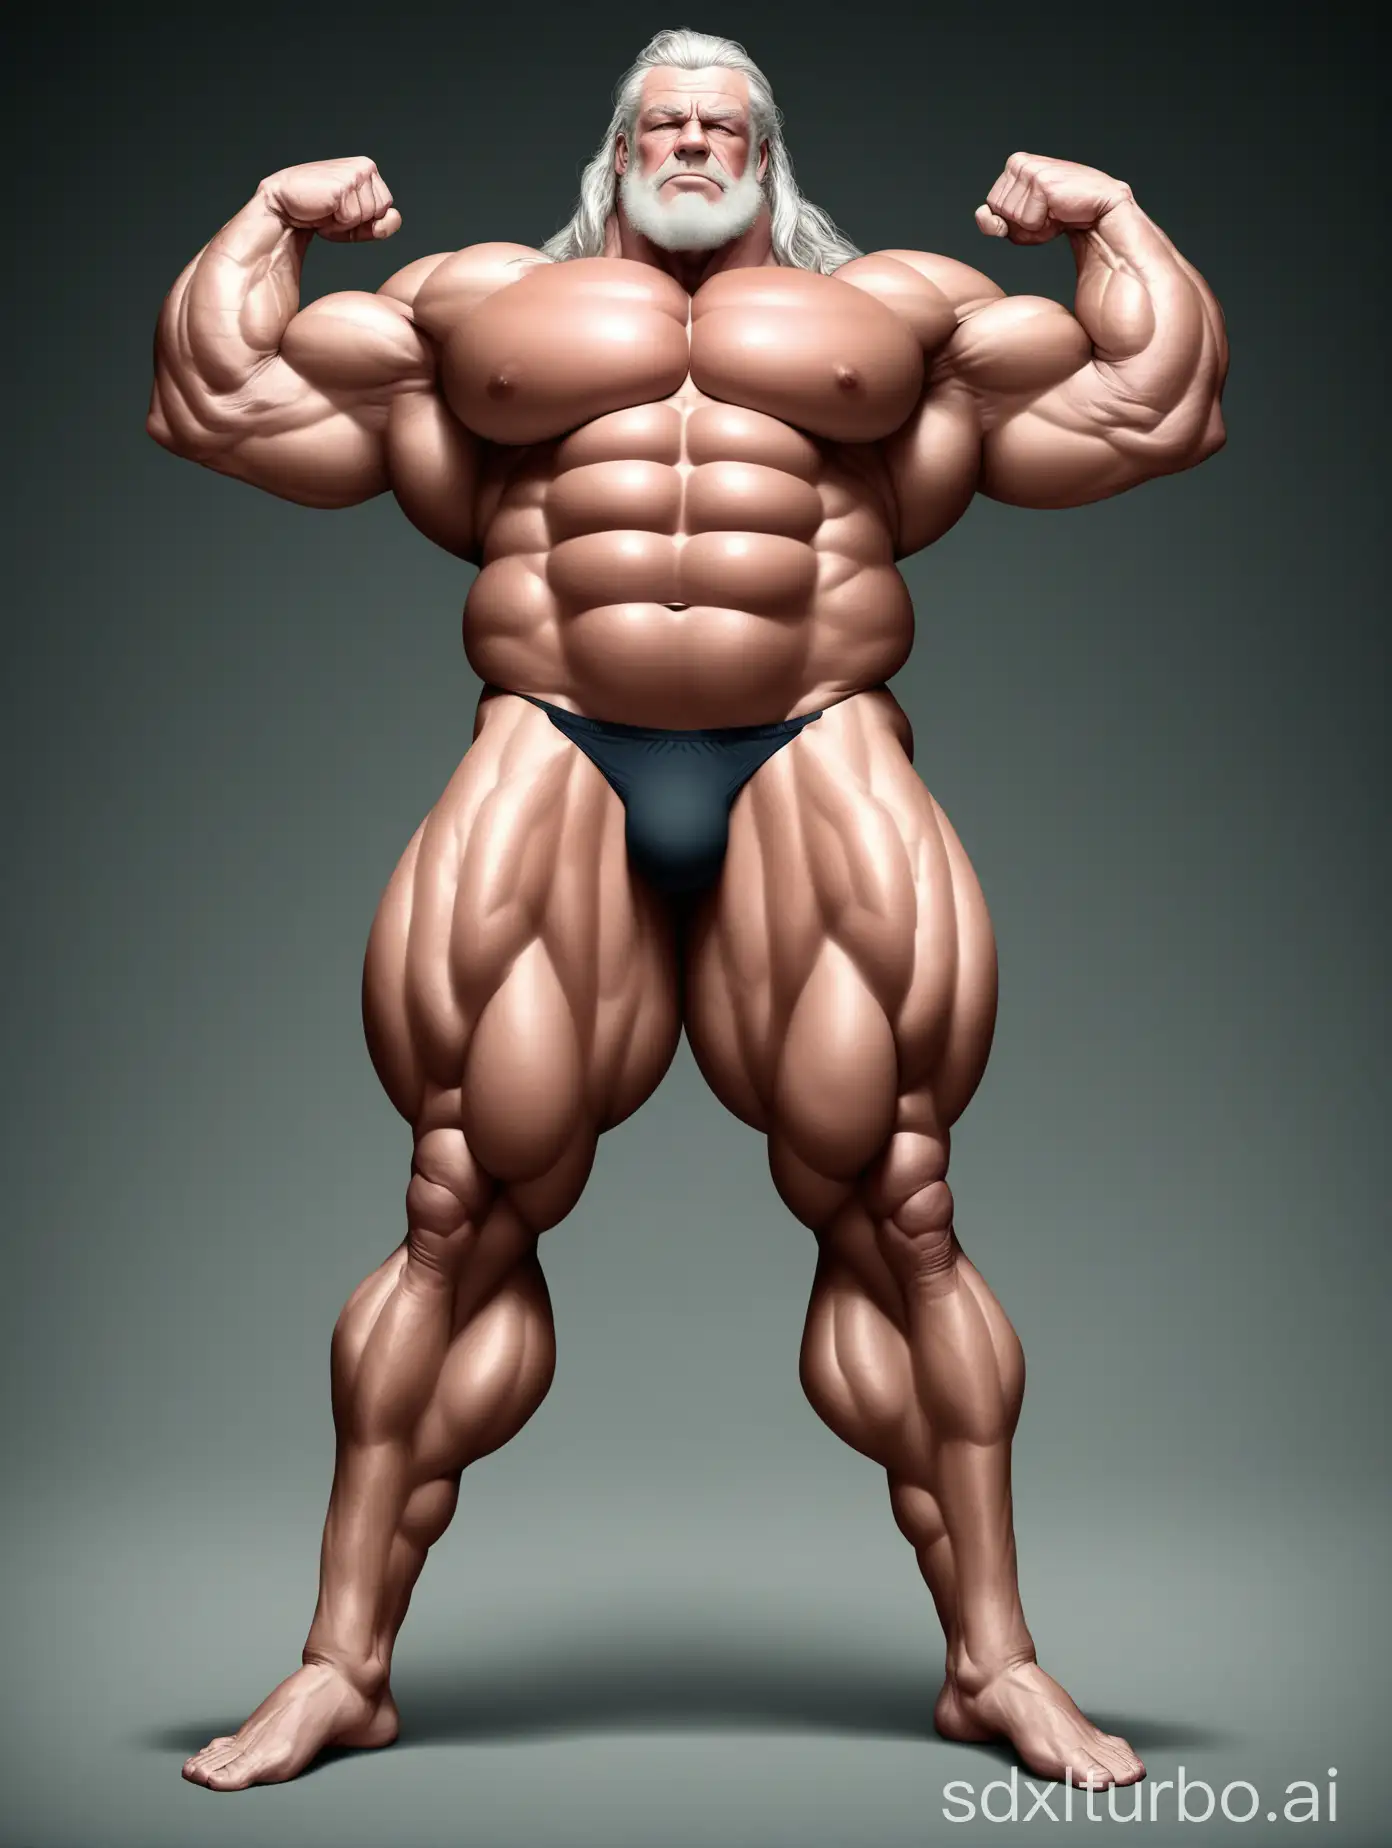 Massive-Muscle-Man-Flexing-Giant-Biceps-in-Underwear